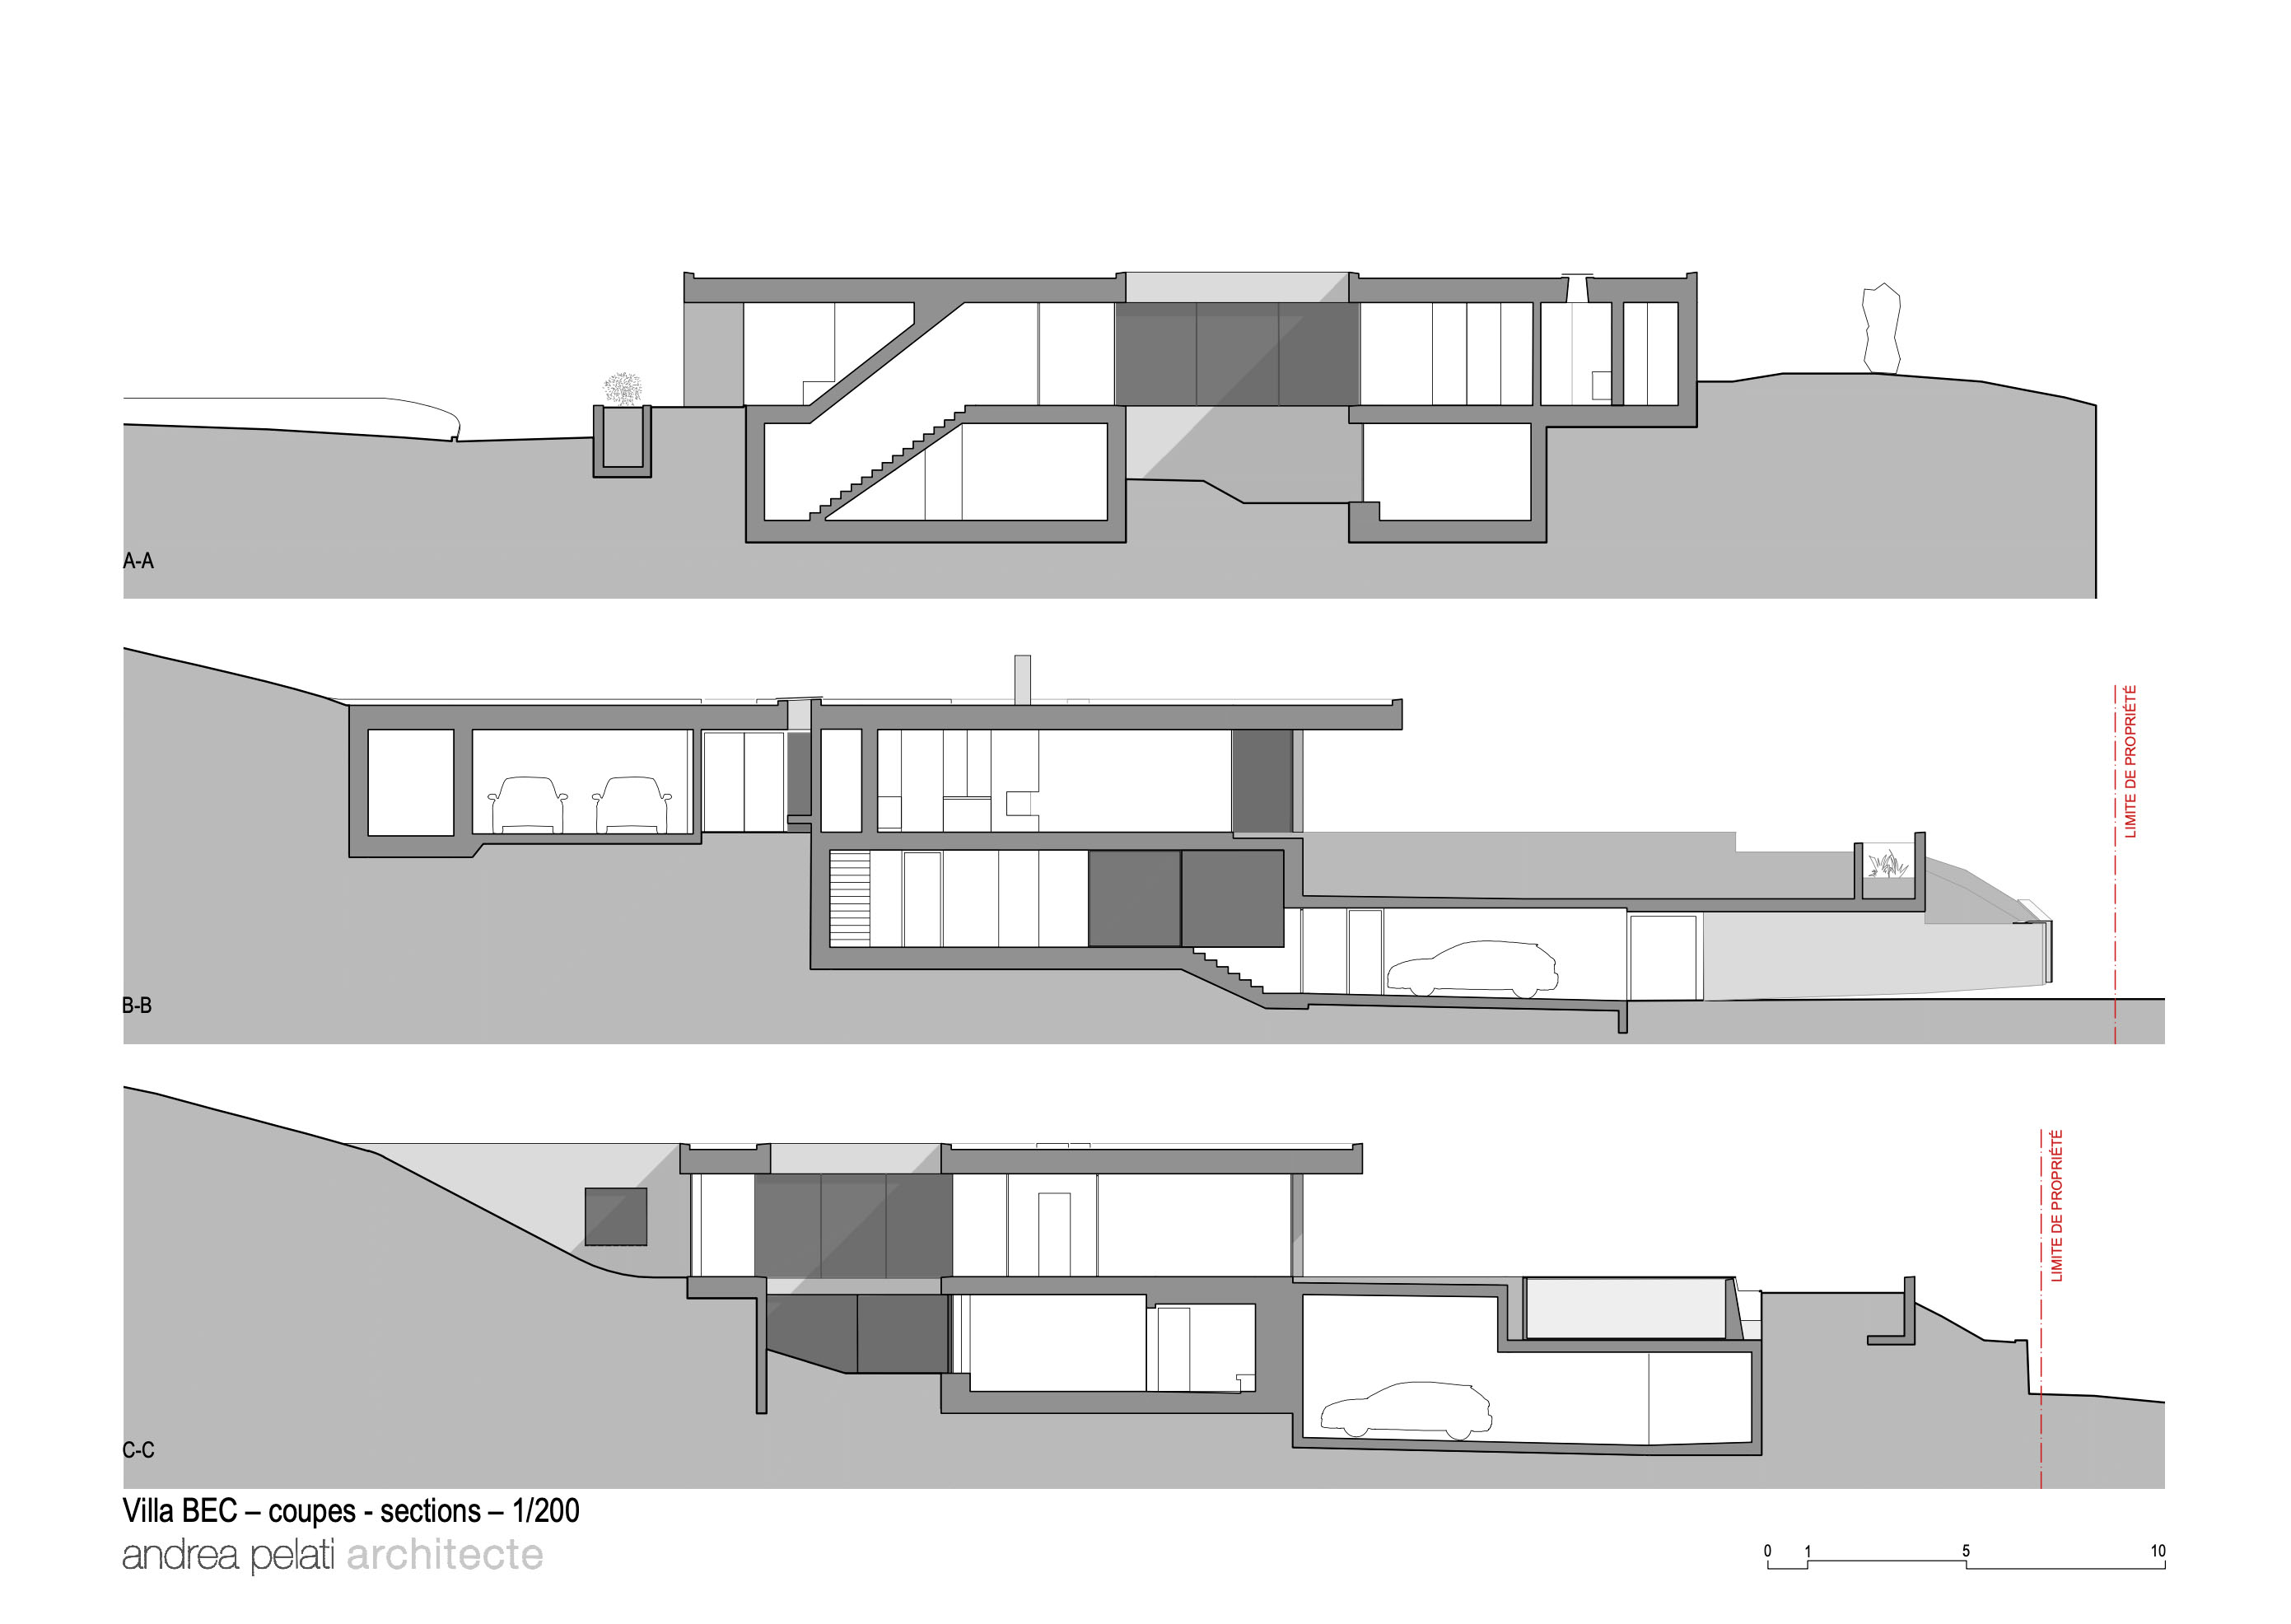 Andrea Pelati,别墅设计,瑞士,极简主义,别墅设计案例,别墅设计方案,景观别墅,湖景别墅